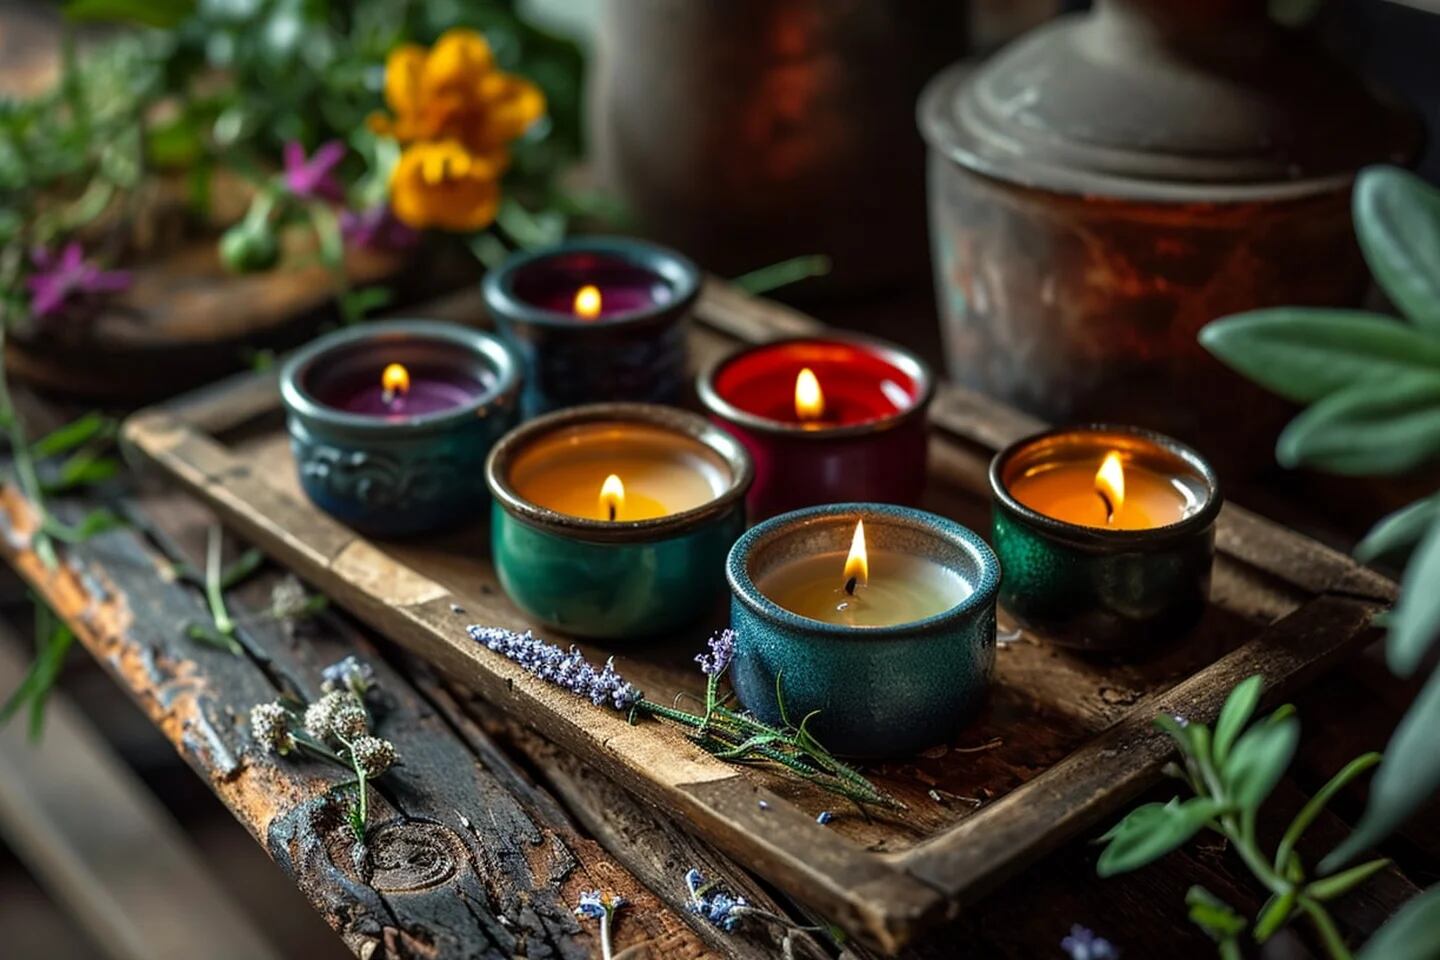 Enciendes velas aromáticas en casa? Una experta revela qué riesgos